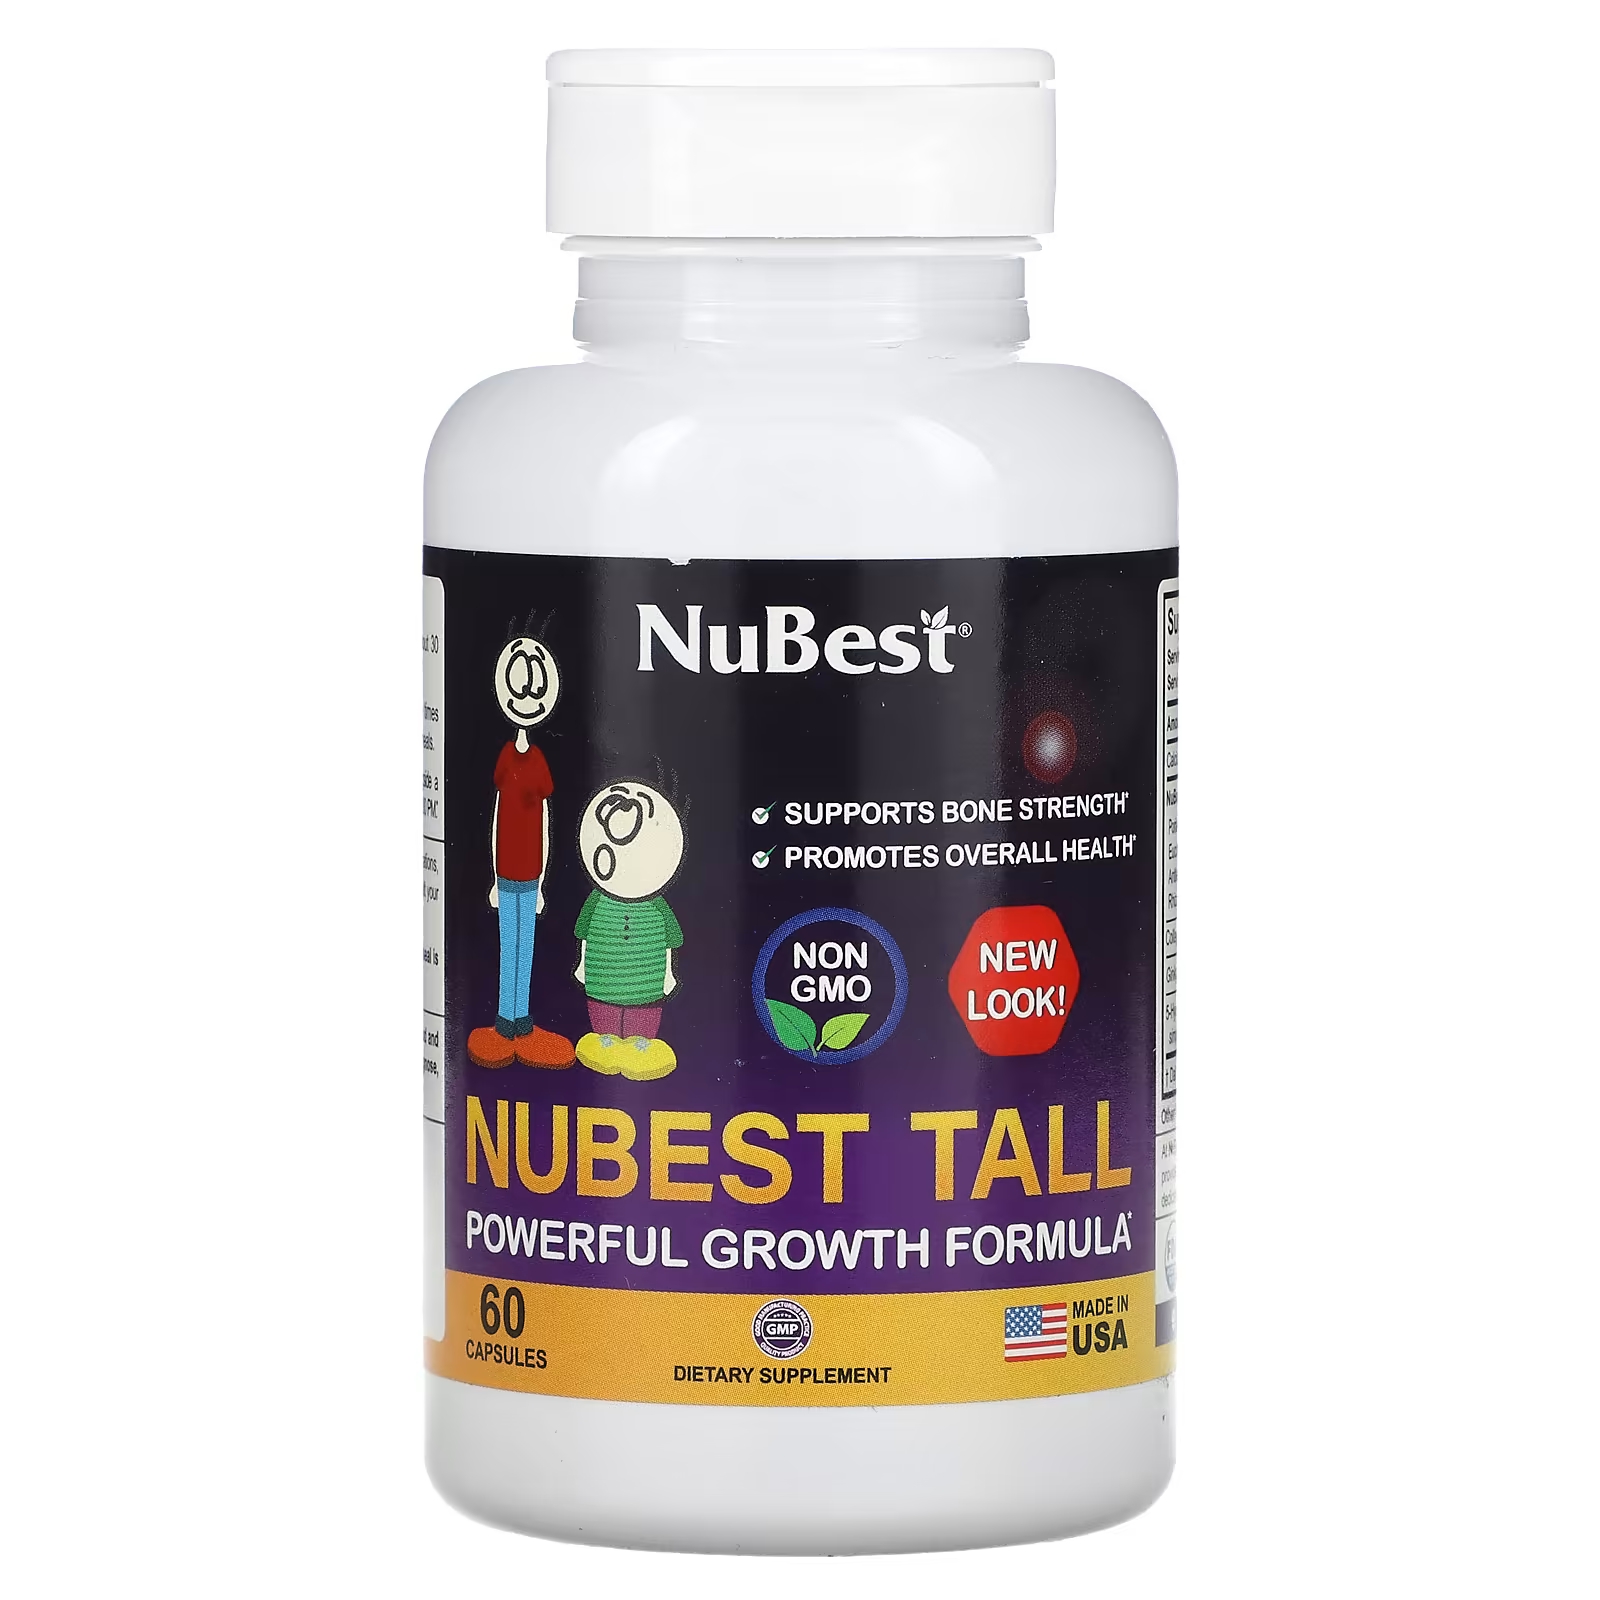 Пищевая добавка NuBest формула мощного роста, 60 капсул пищевая добавка nubest коллаген премиум класса 90 капсул